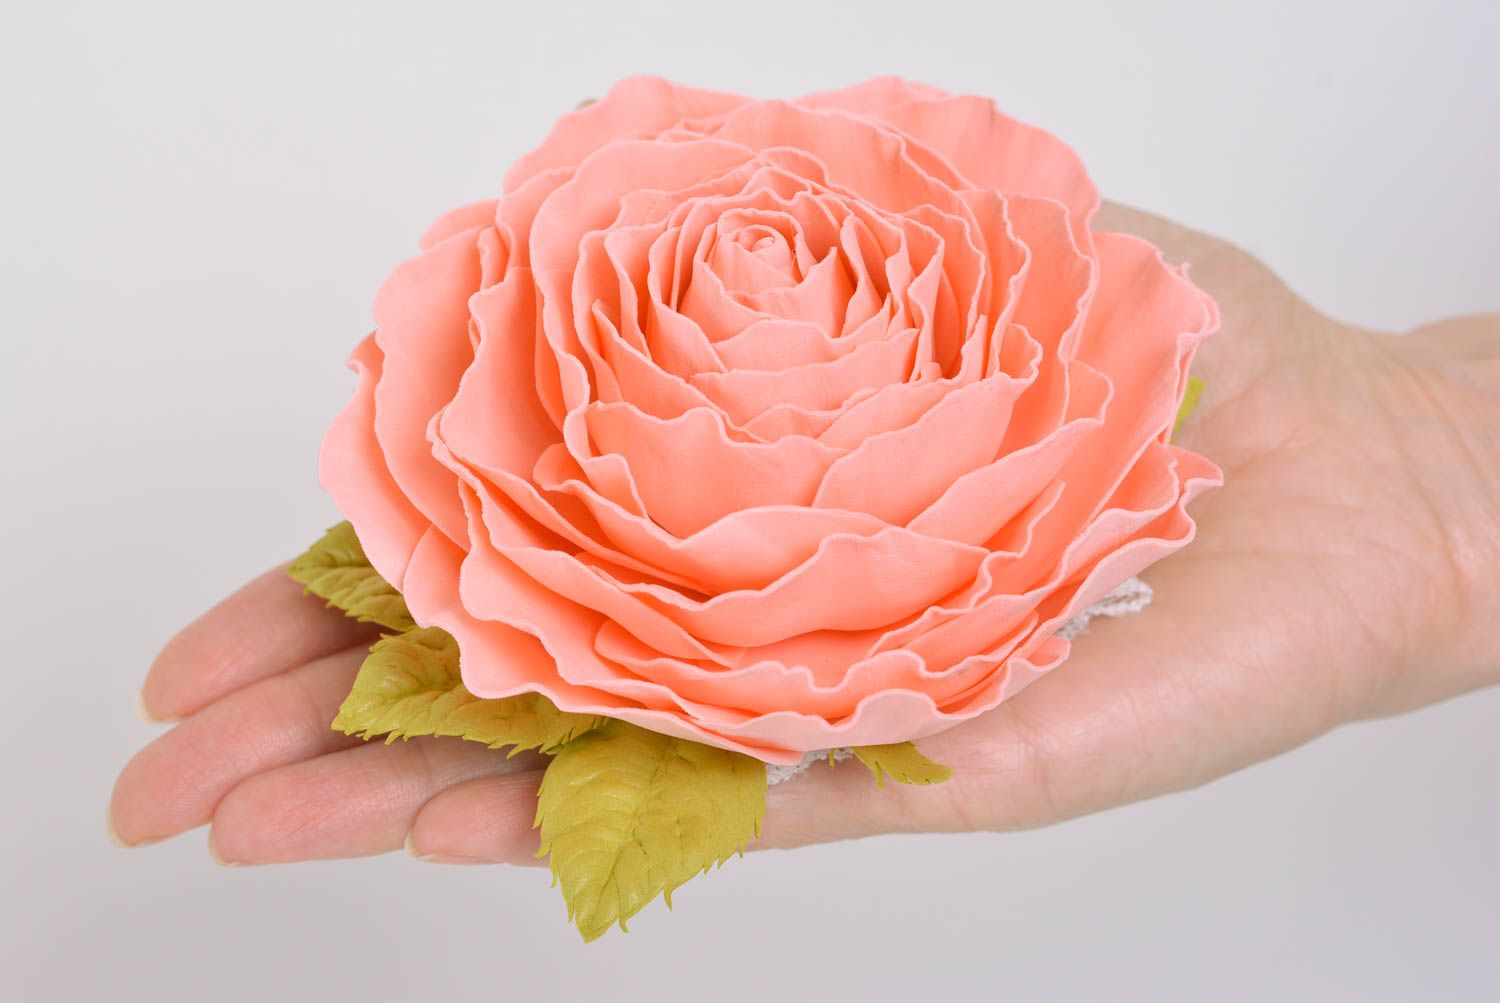 Красивая кружевная повязка на голову с цветком розы из фоамирана аксессуар ручной работы фото 4